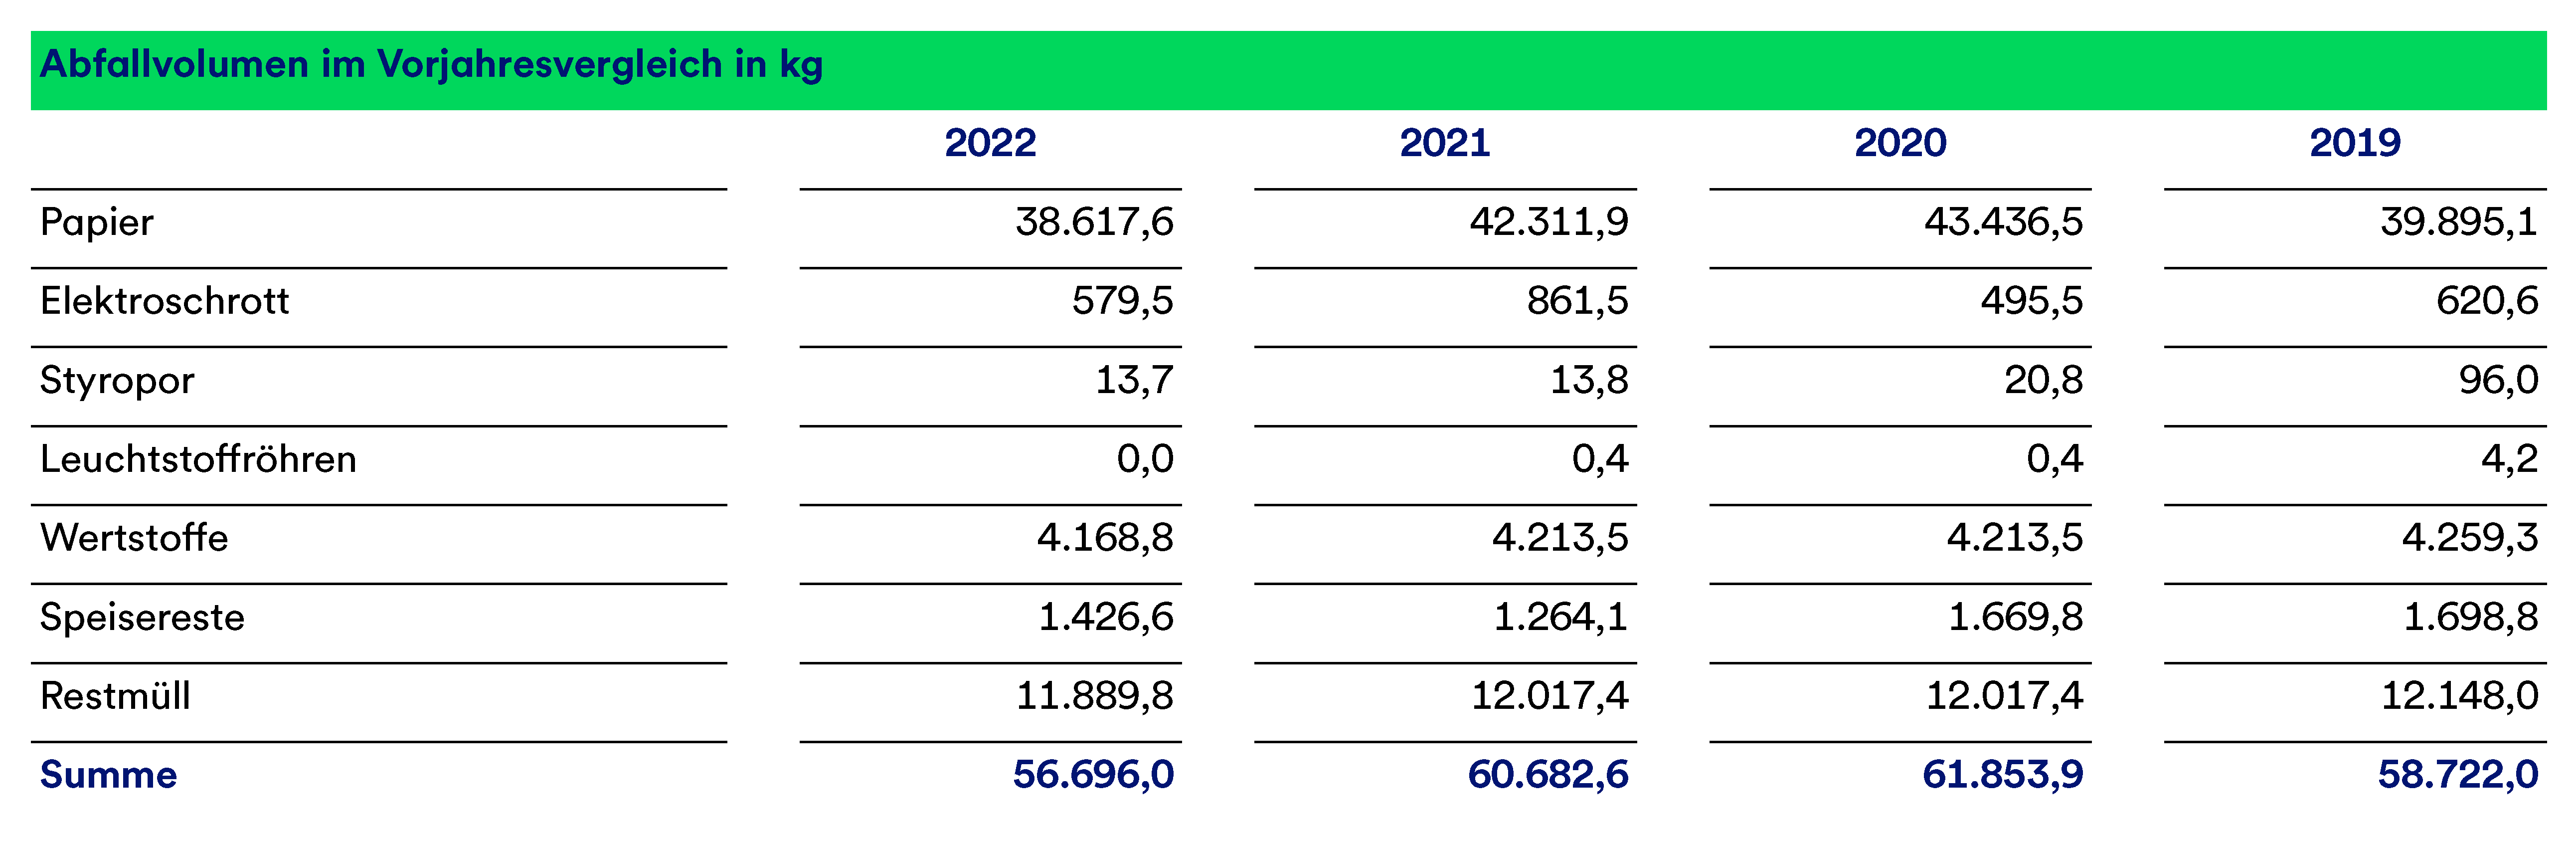 Die Tabelle bildet das Abfallvolumen im Jahresvergleich 2019-2022 und nach Art dar. Der Großteil stammt von Papiermüll, gefolgt von Restmüll.